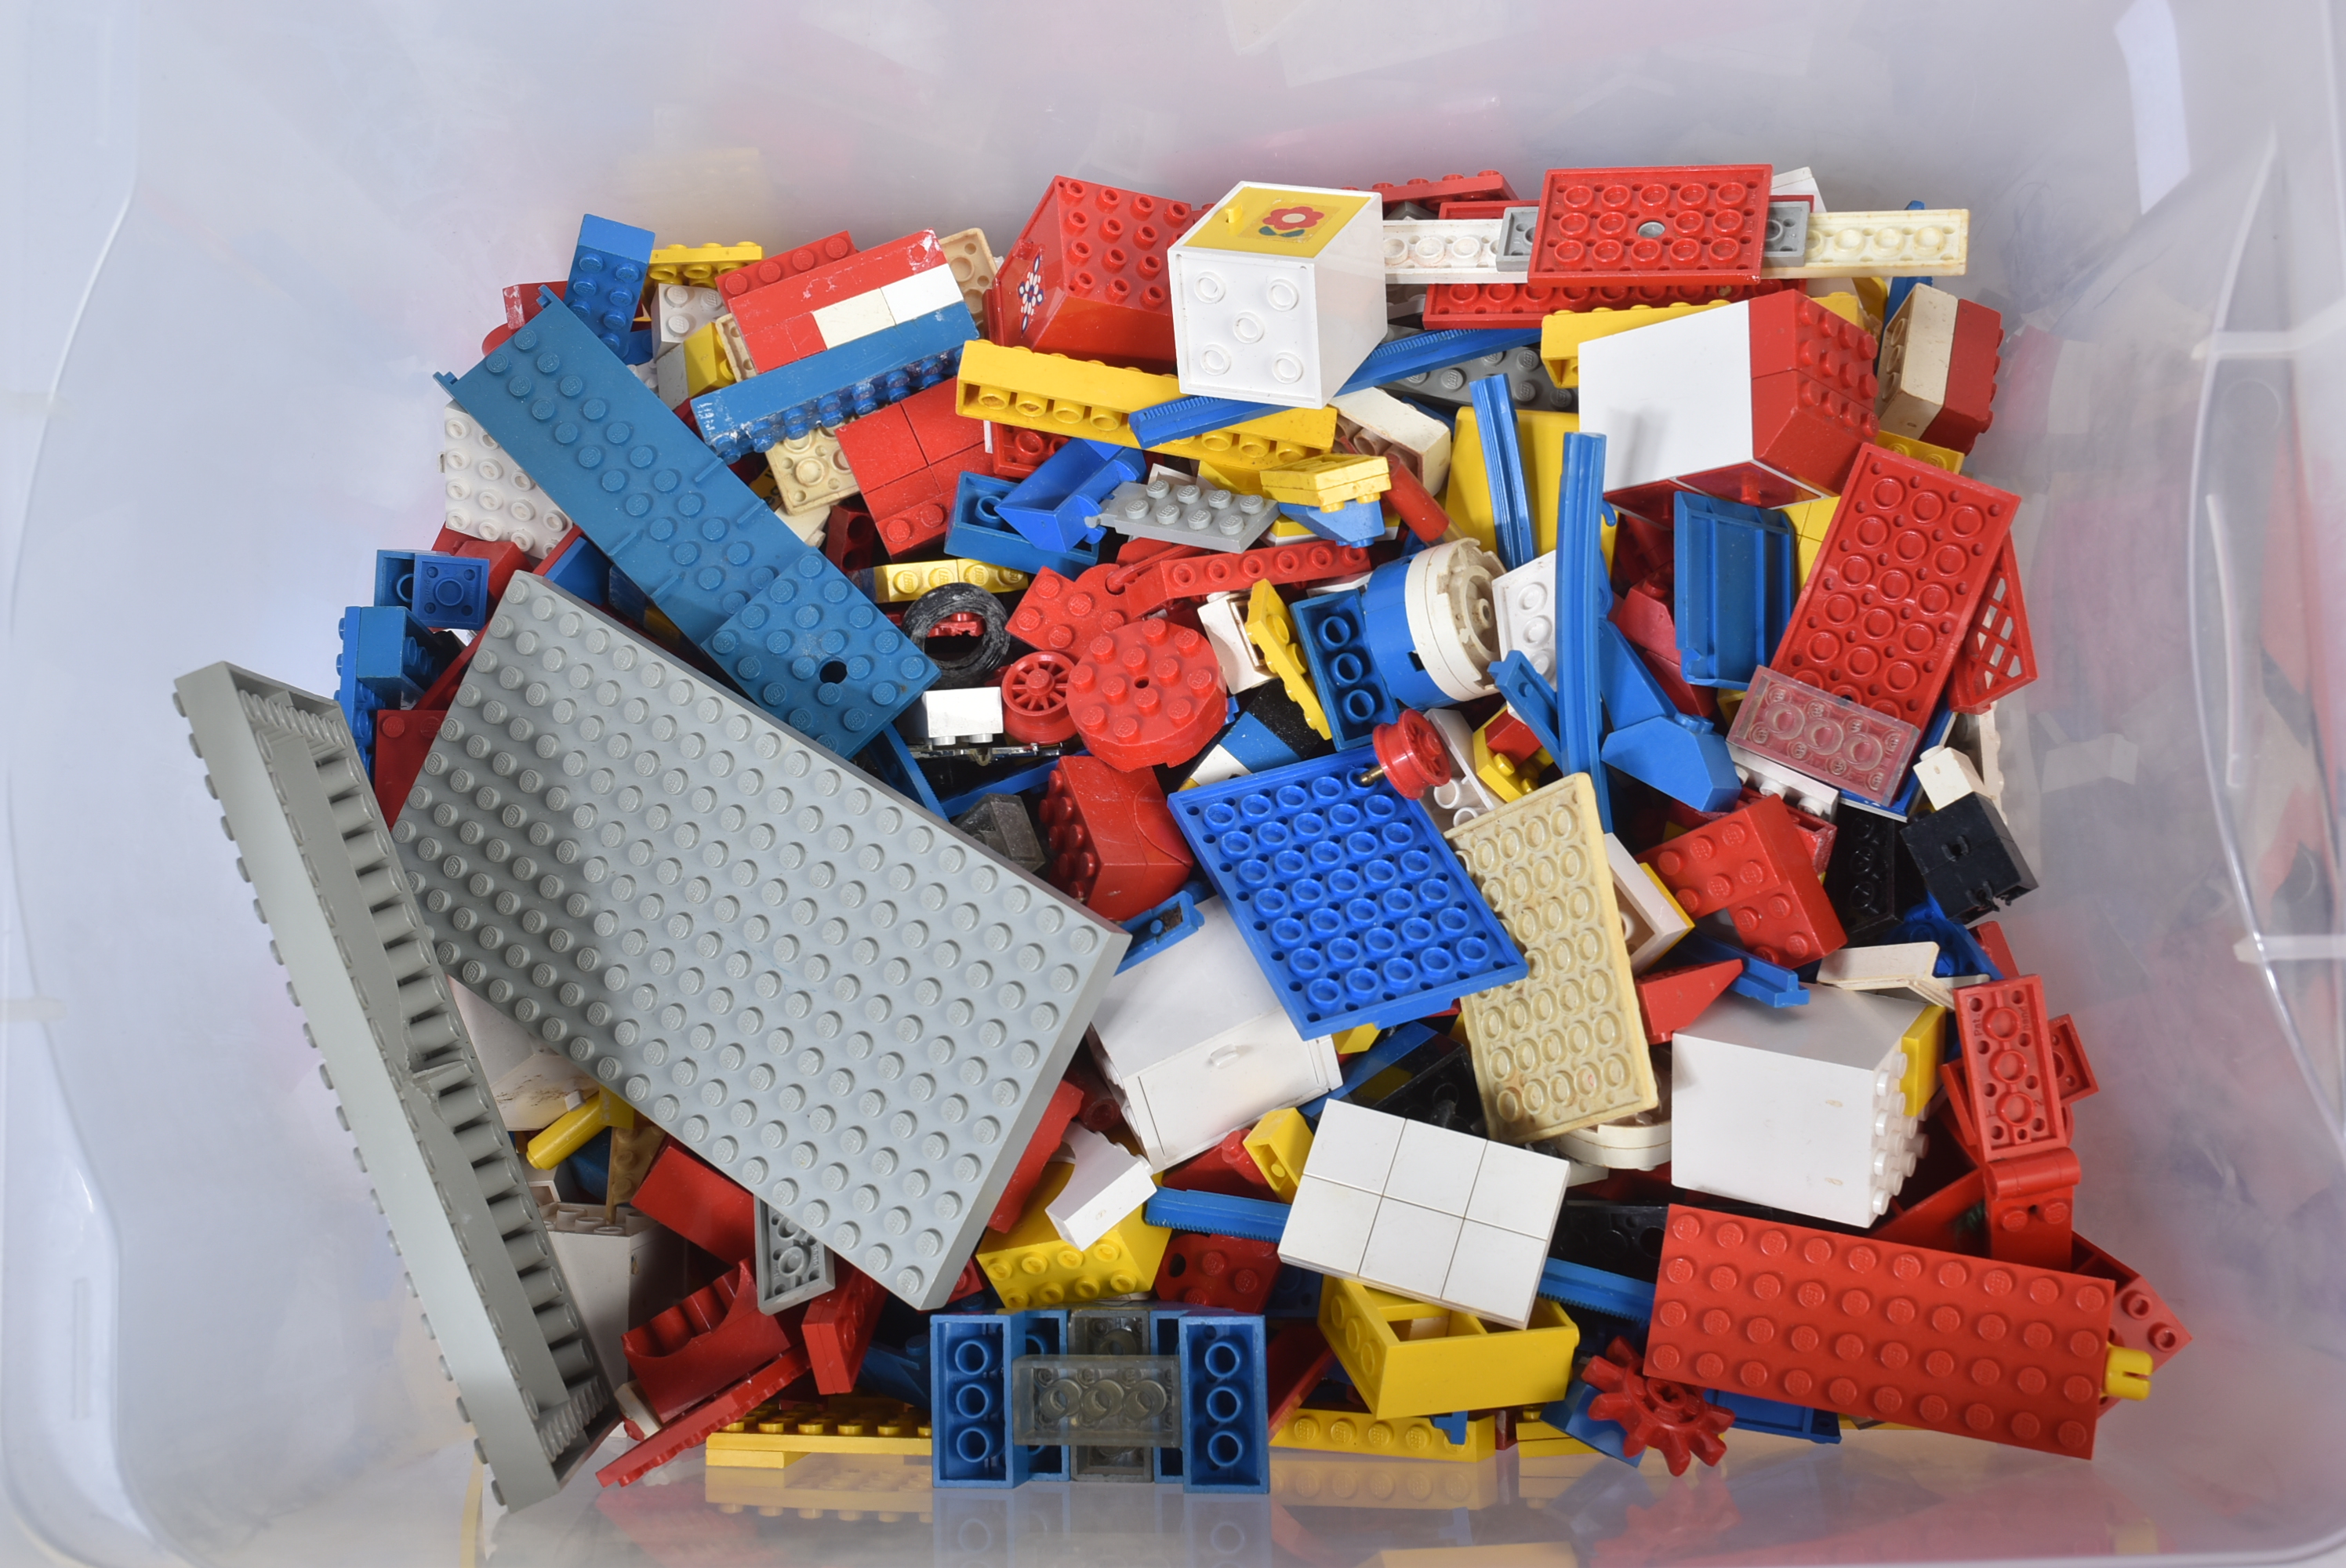 LEGO - VINTAGE LEGO BRICKS AND STORAGE TRAYS - Image 6 of 8